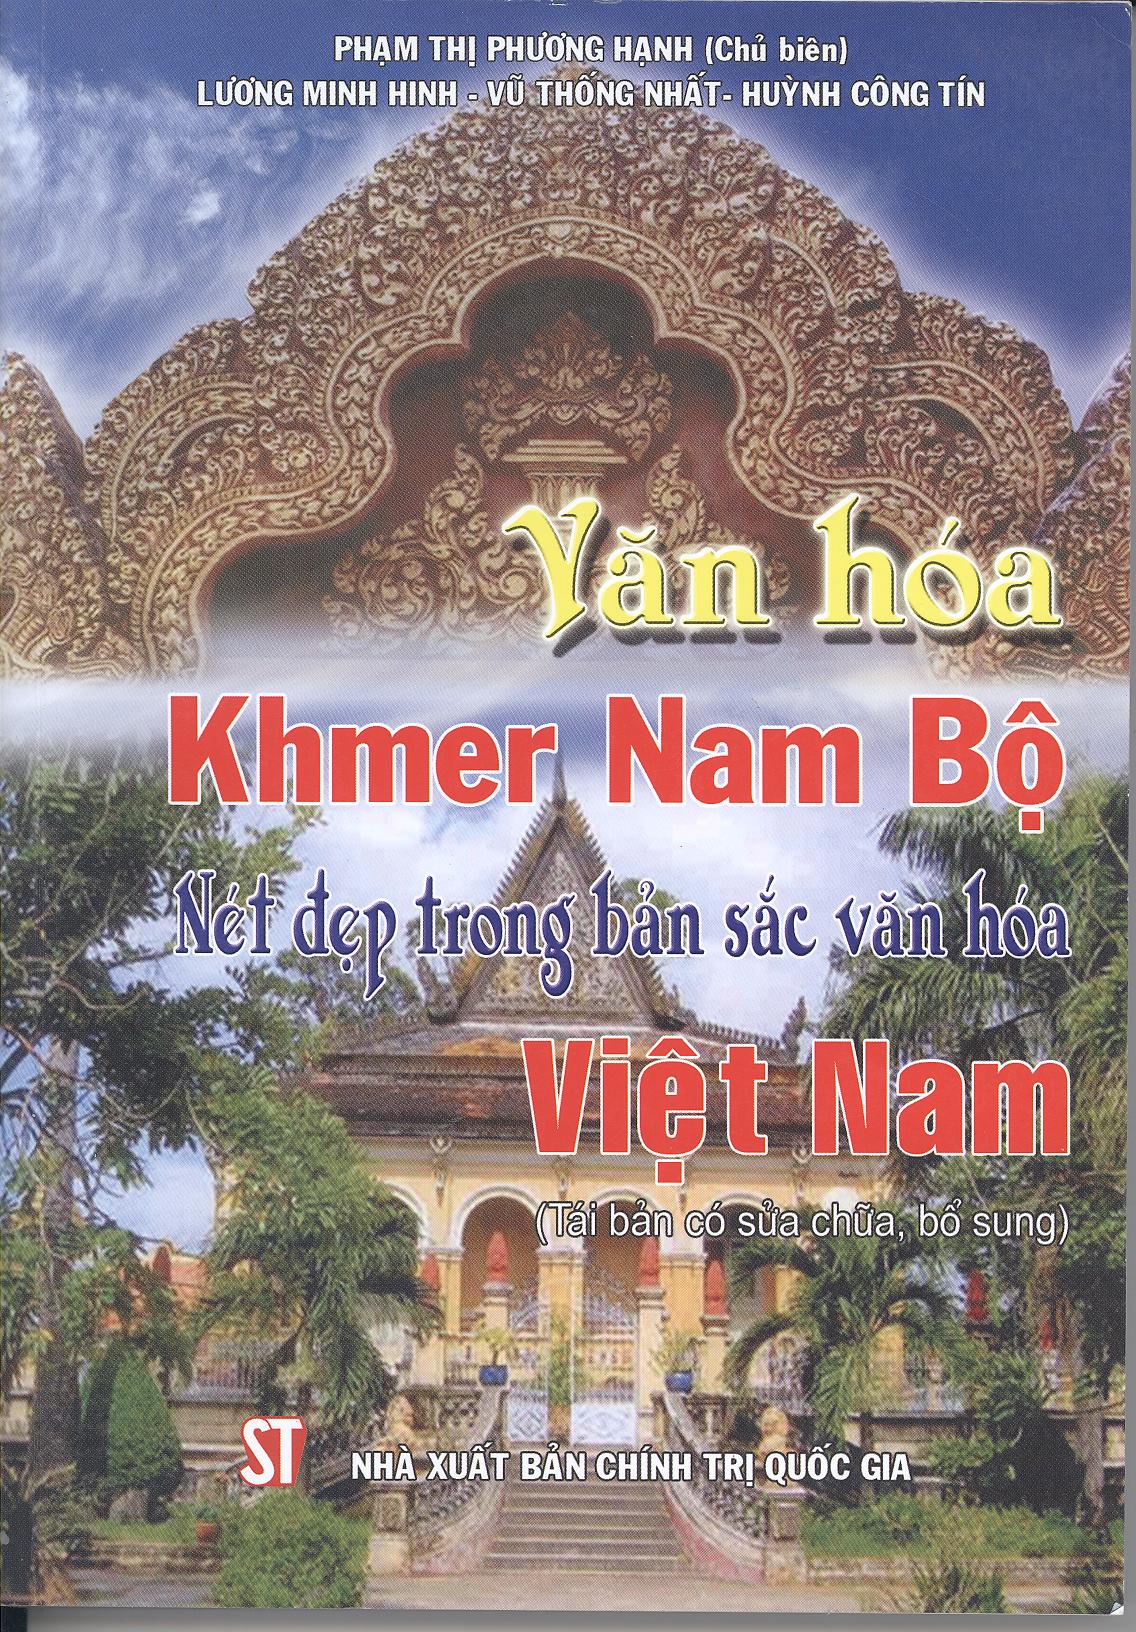 Văn hóa Khmer Nam Bộ - Nét đẹp trong bản sắc văn hóa Việt Nam (Tái bản có sửa chữa, bổ sung)